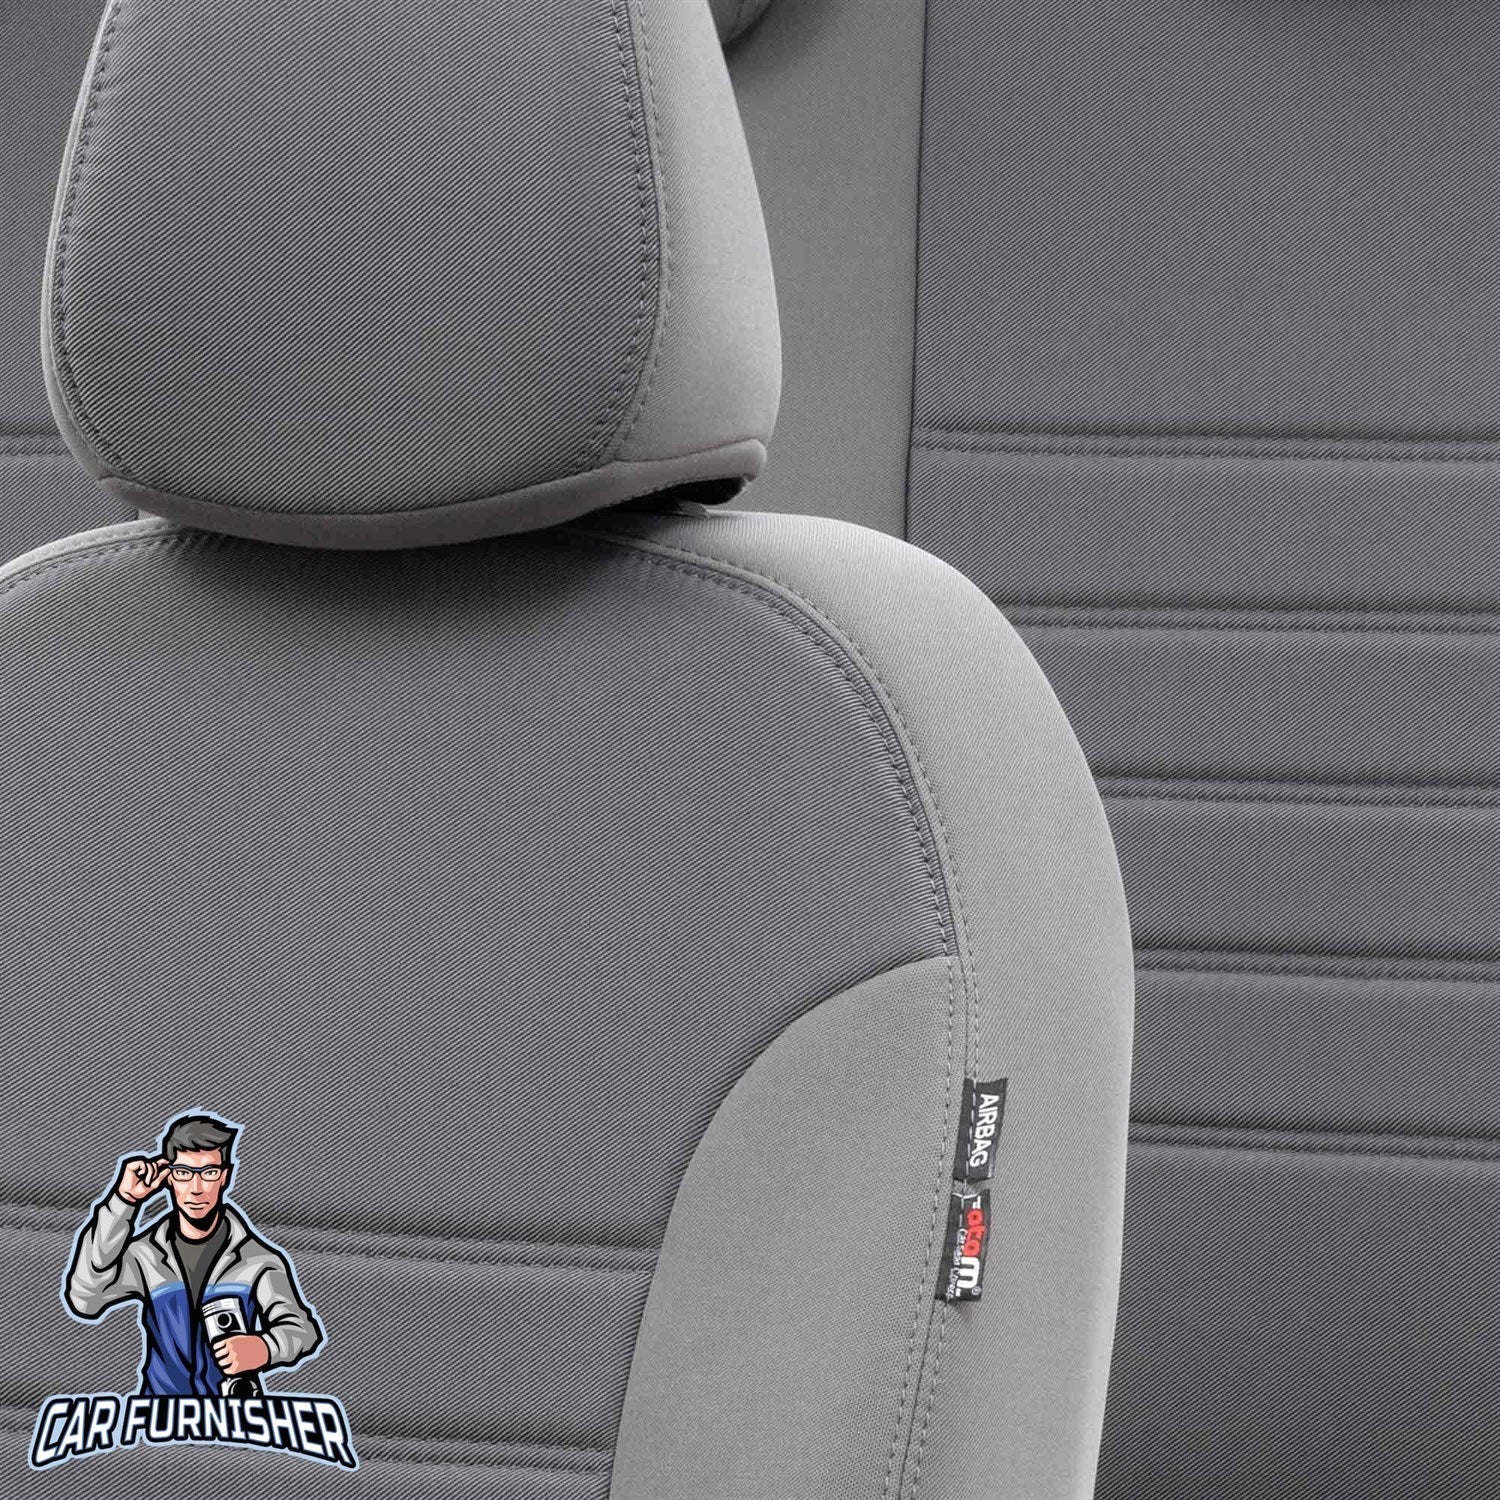 Bmw 1 Series Seat Cover Original Jacquard Design Gray Jacquard Fabric